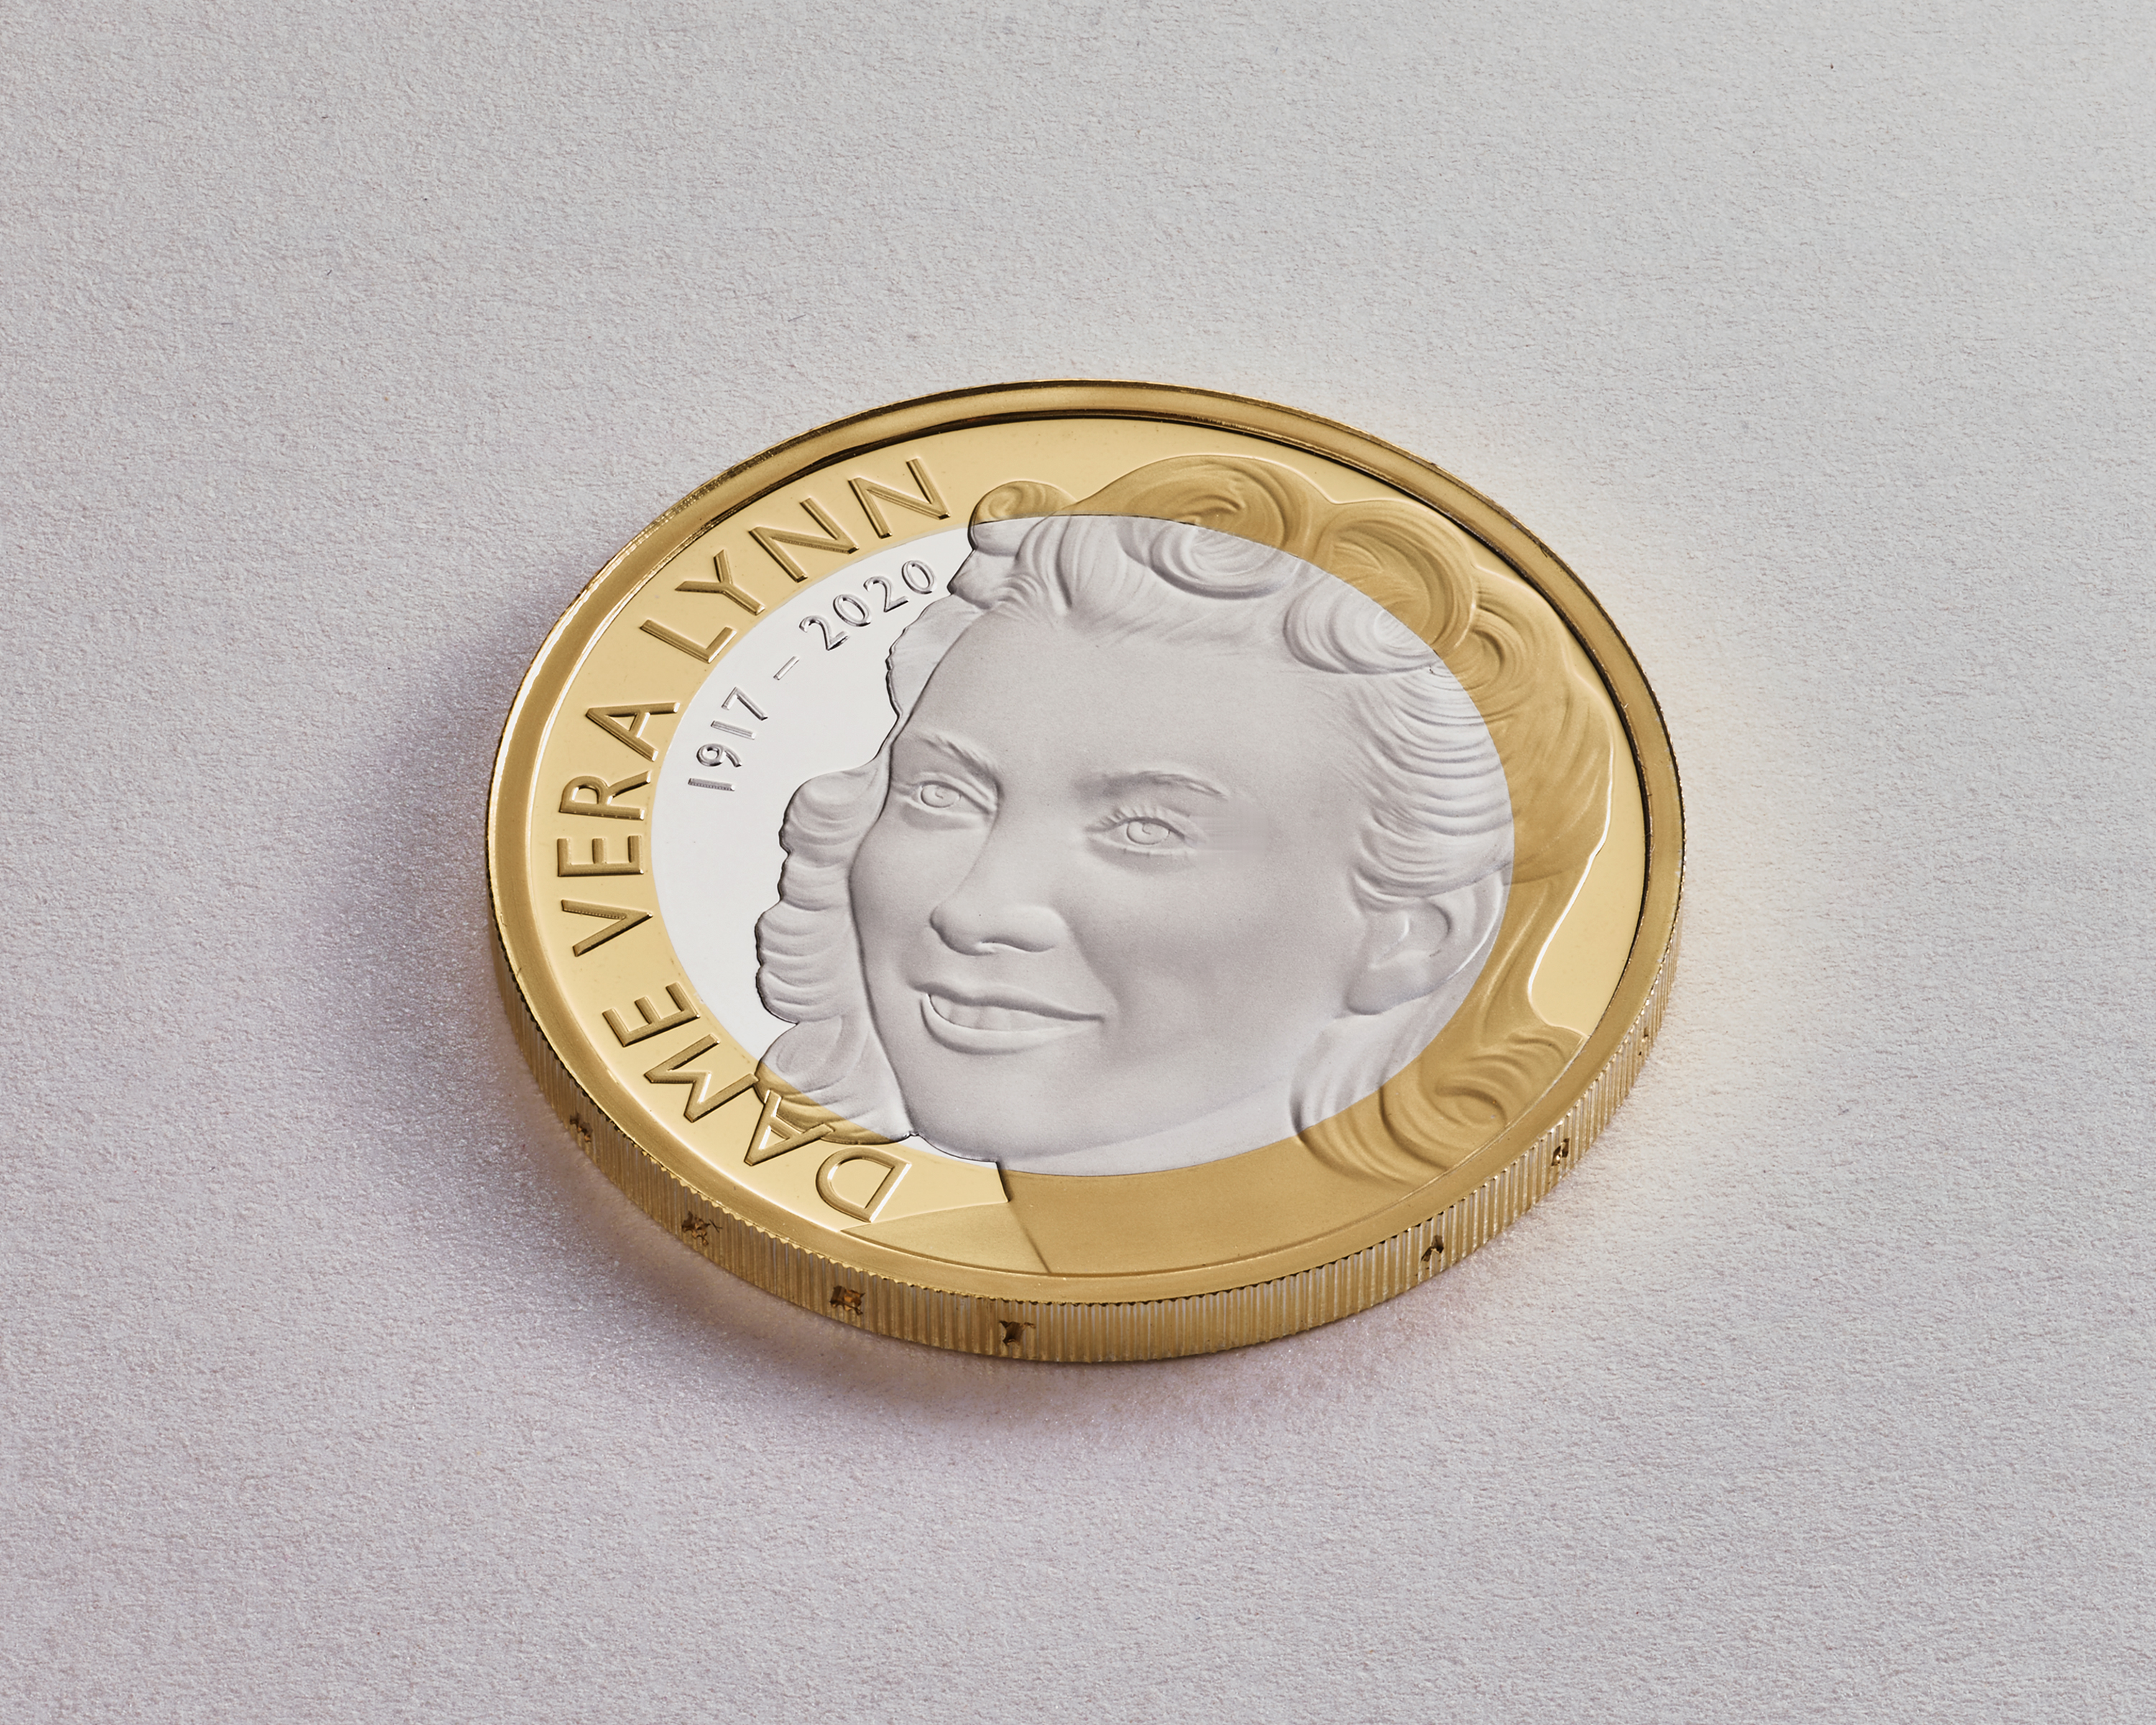 Dame Vera Lynn coin